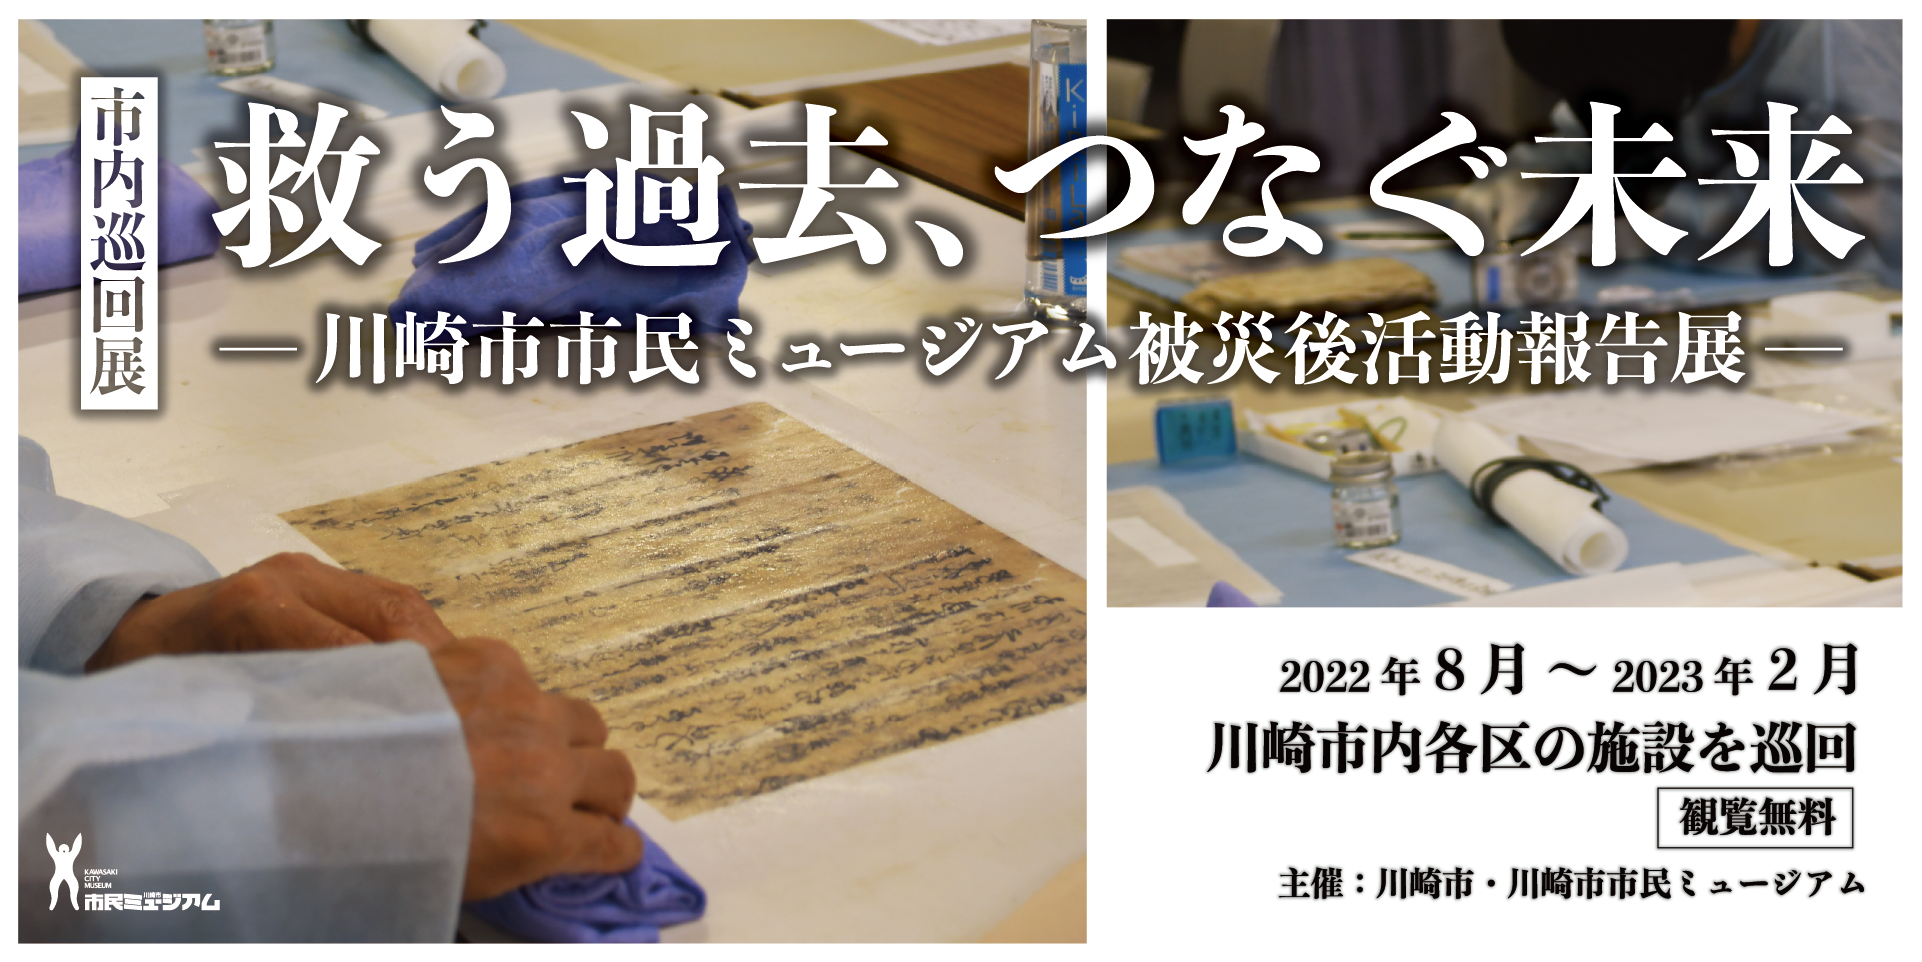 救う過去、つなぐ未来　 川崎市市民ミュージアム被災後活動報告展